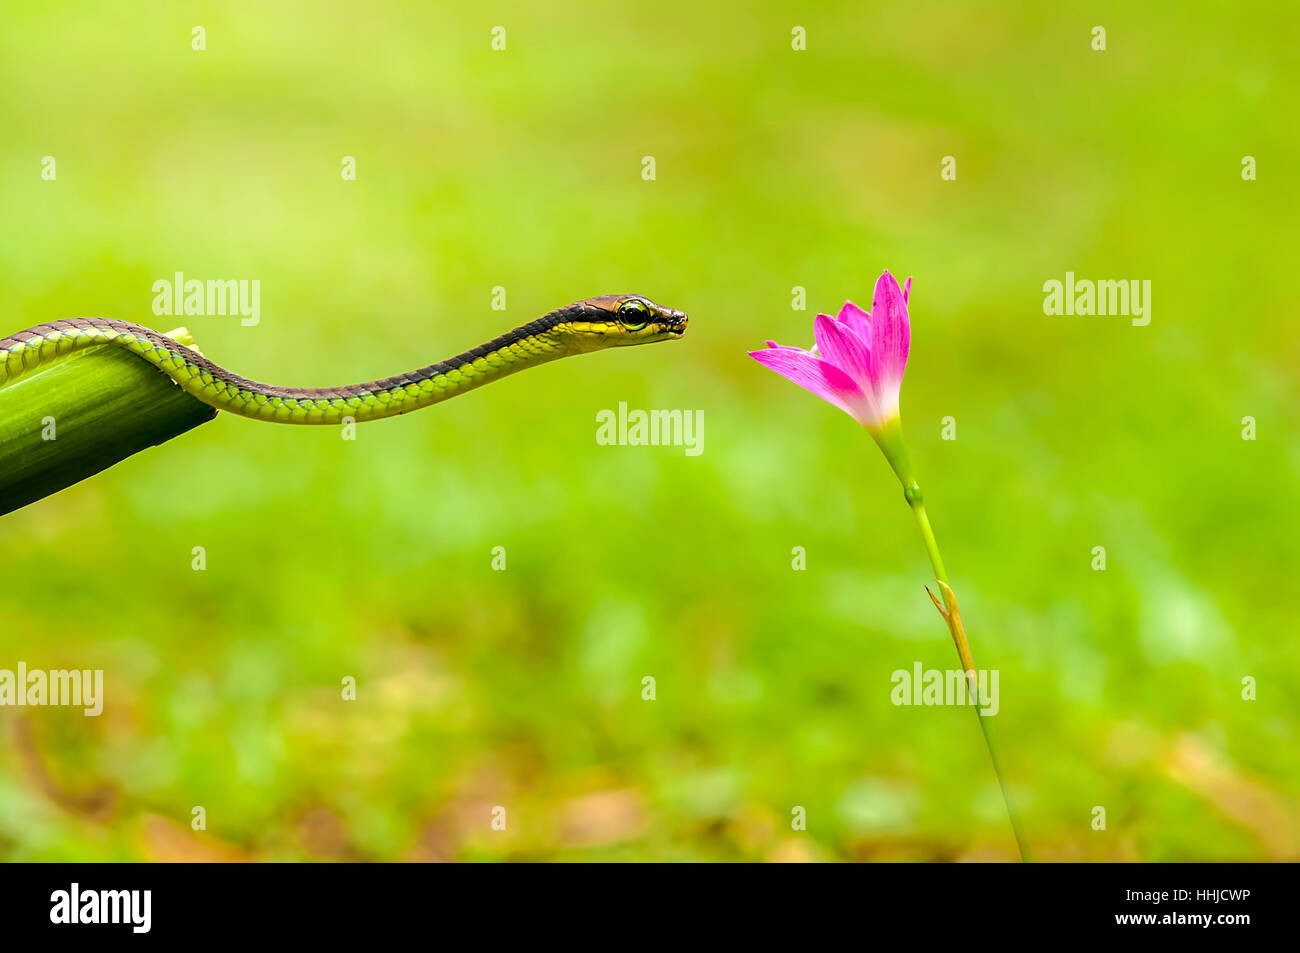 animal, mammal, reptiles, snake, flowers, flower, Stock Photo